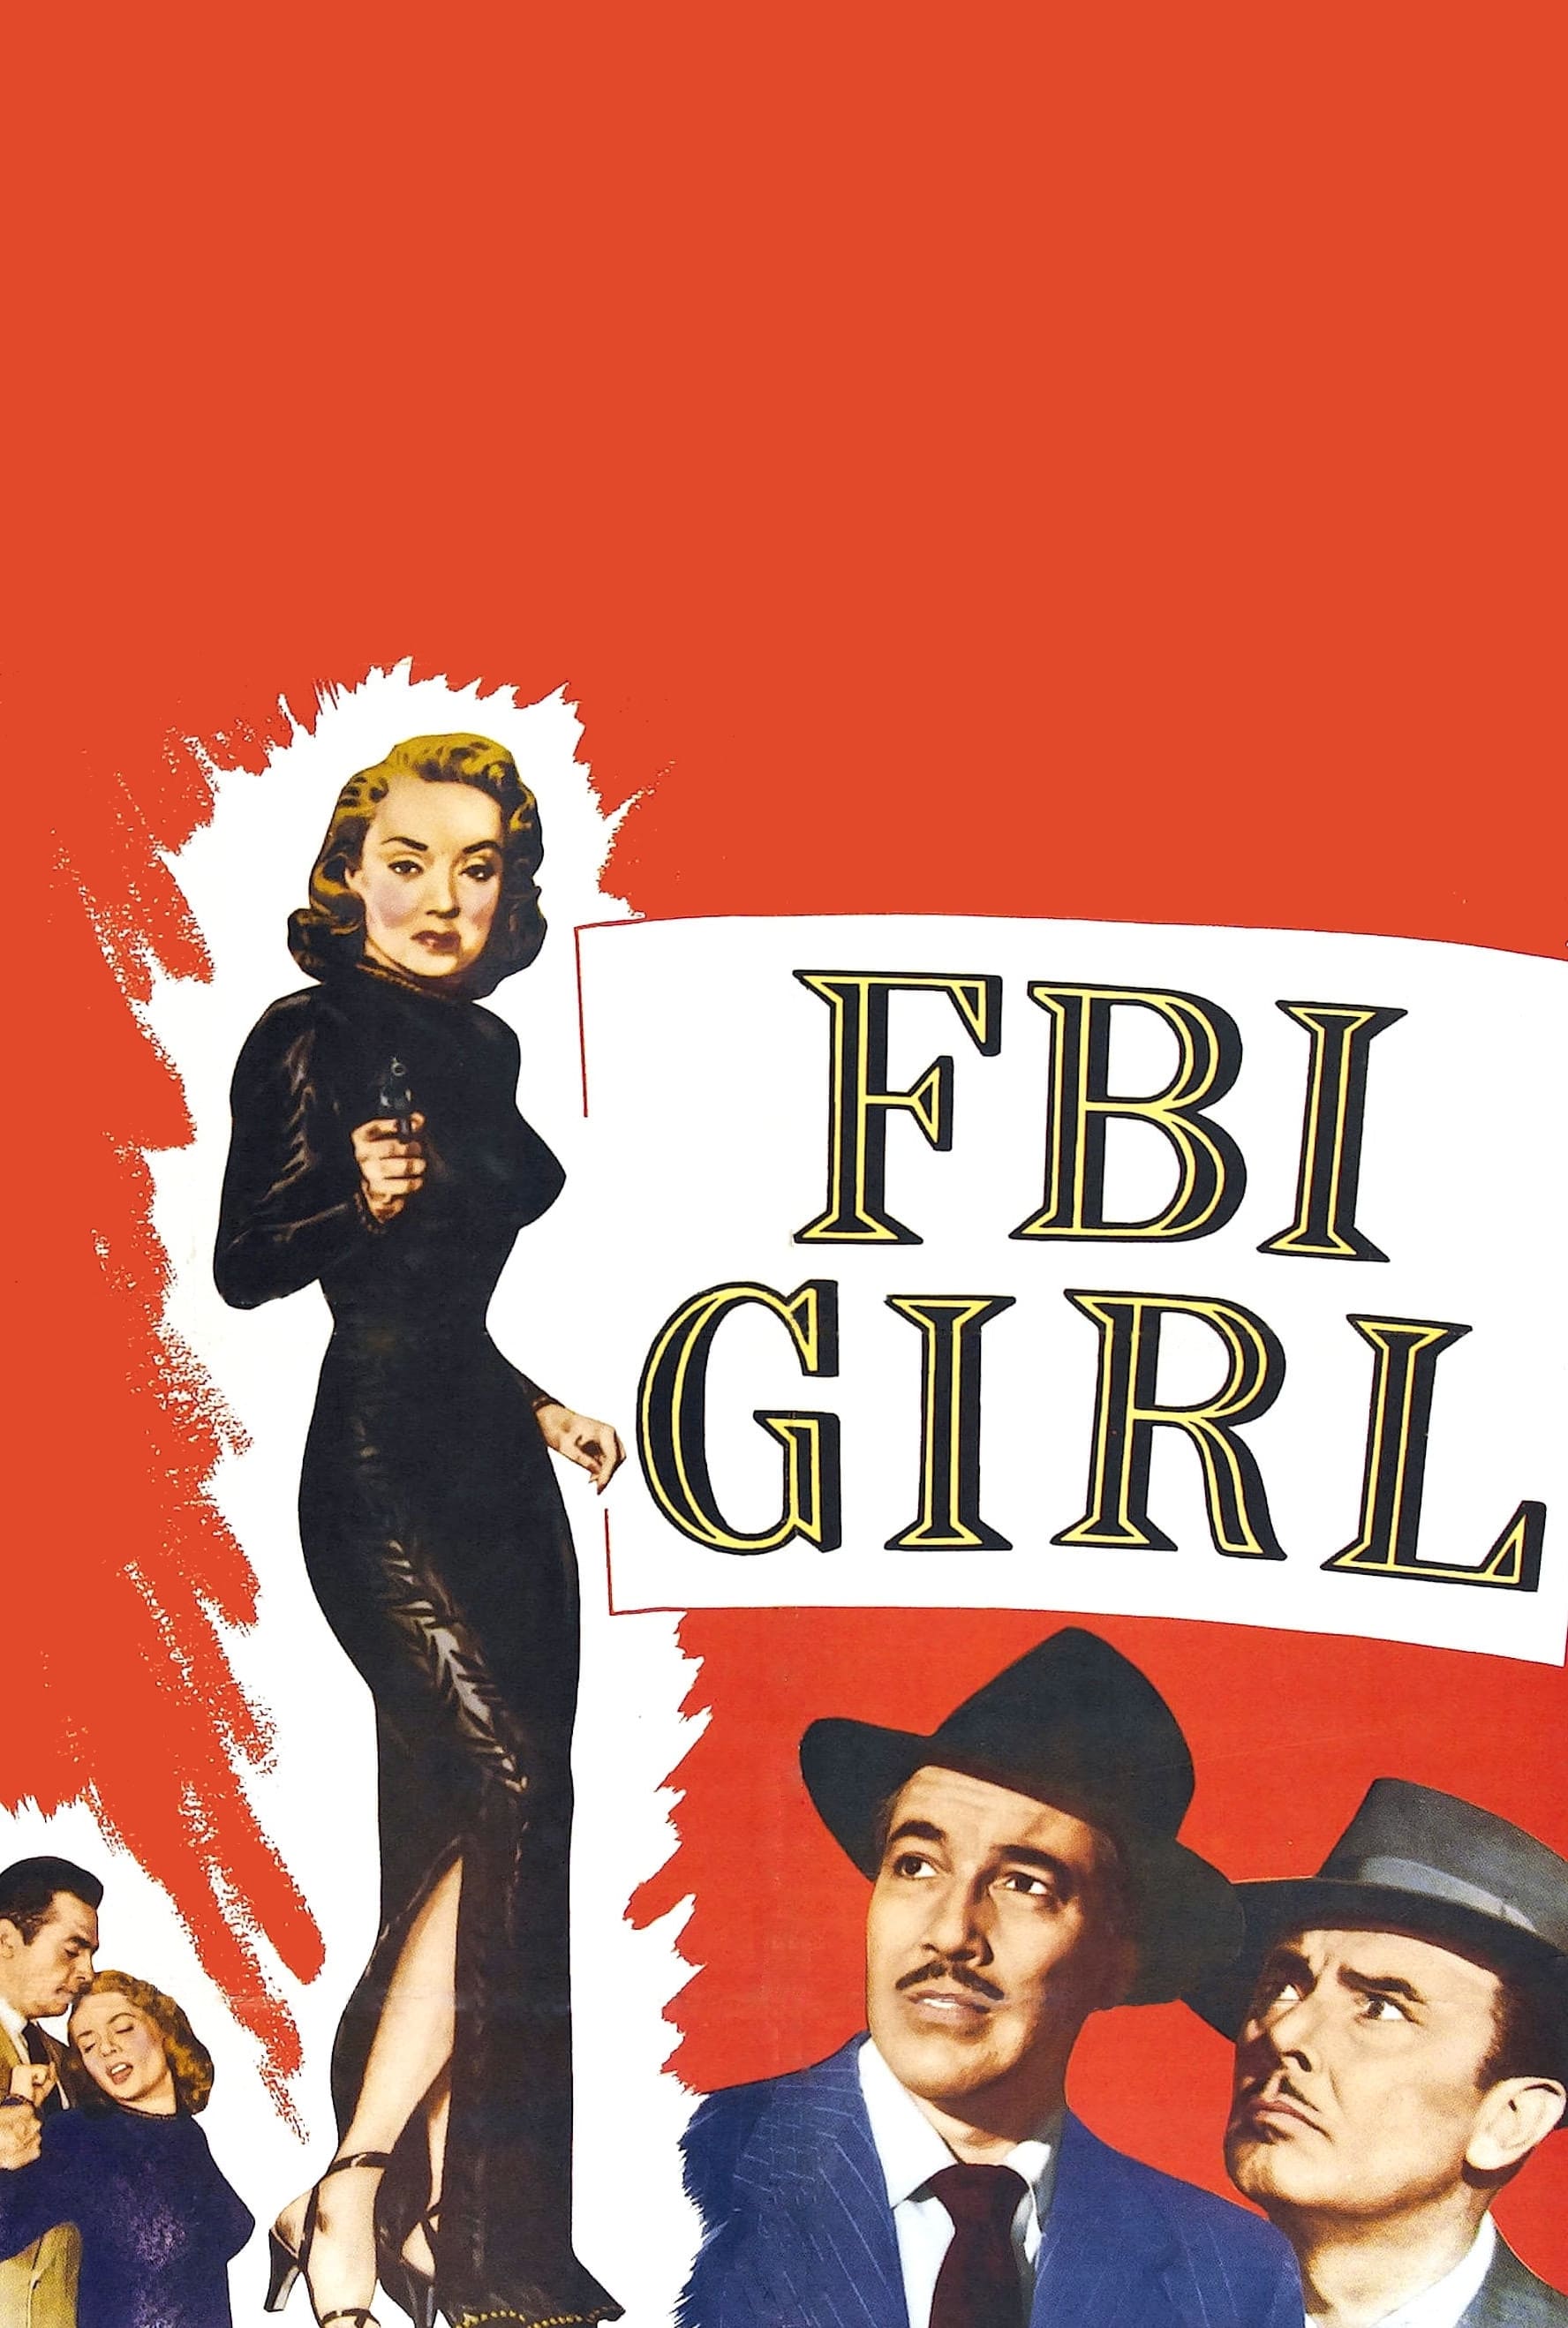 FBI Girl (1951)